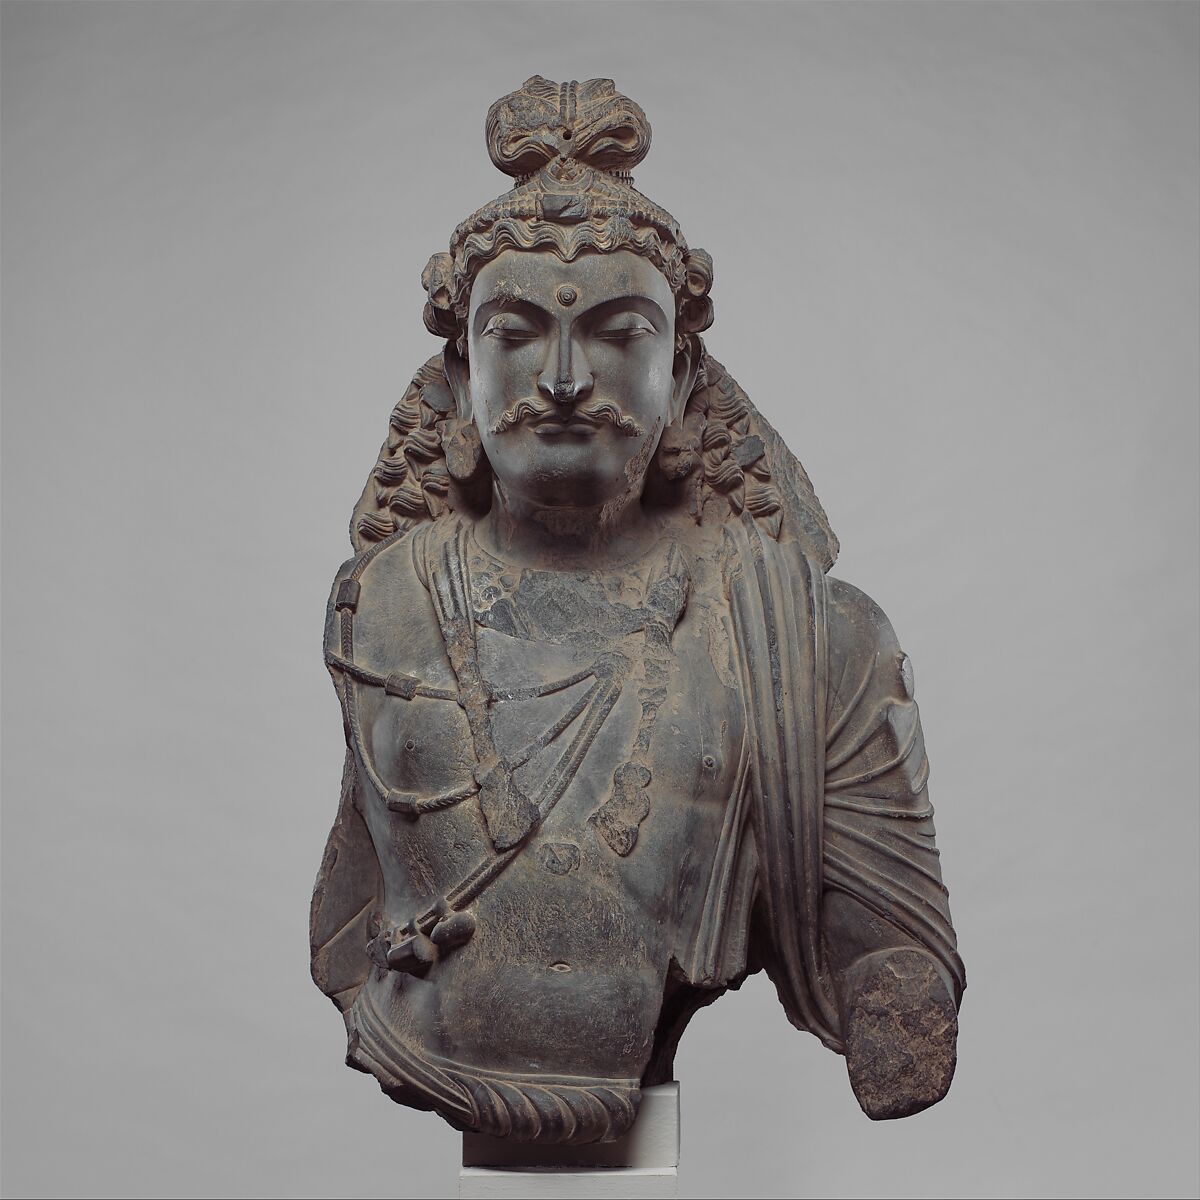 Bust of a Bodhisattva, Schist, Pakistan (ancient region of Gandhara) 